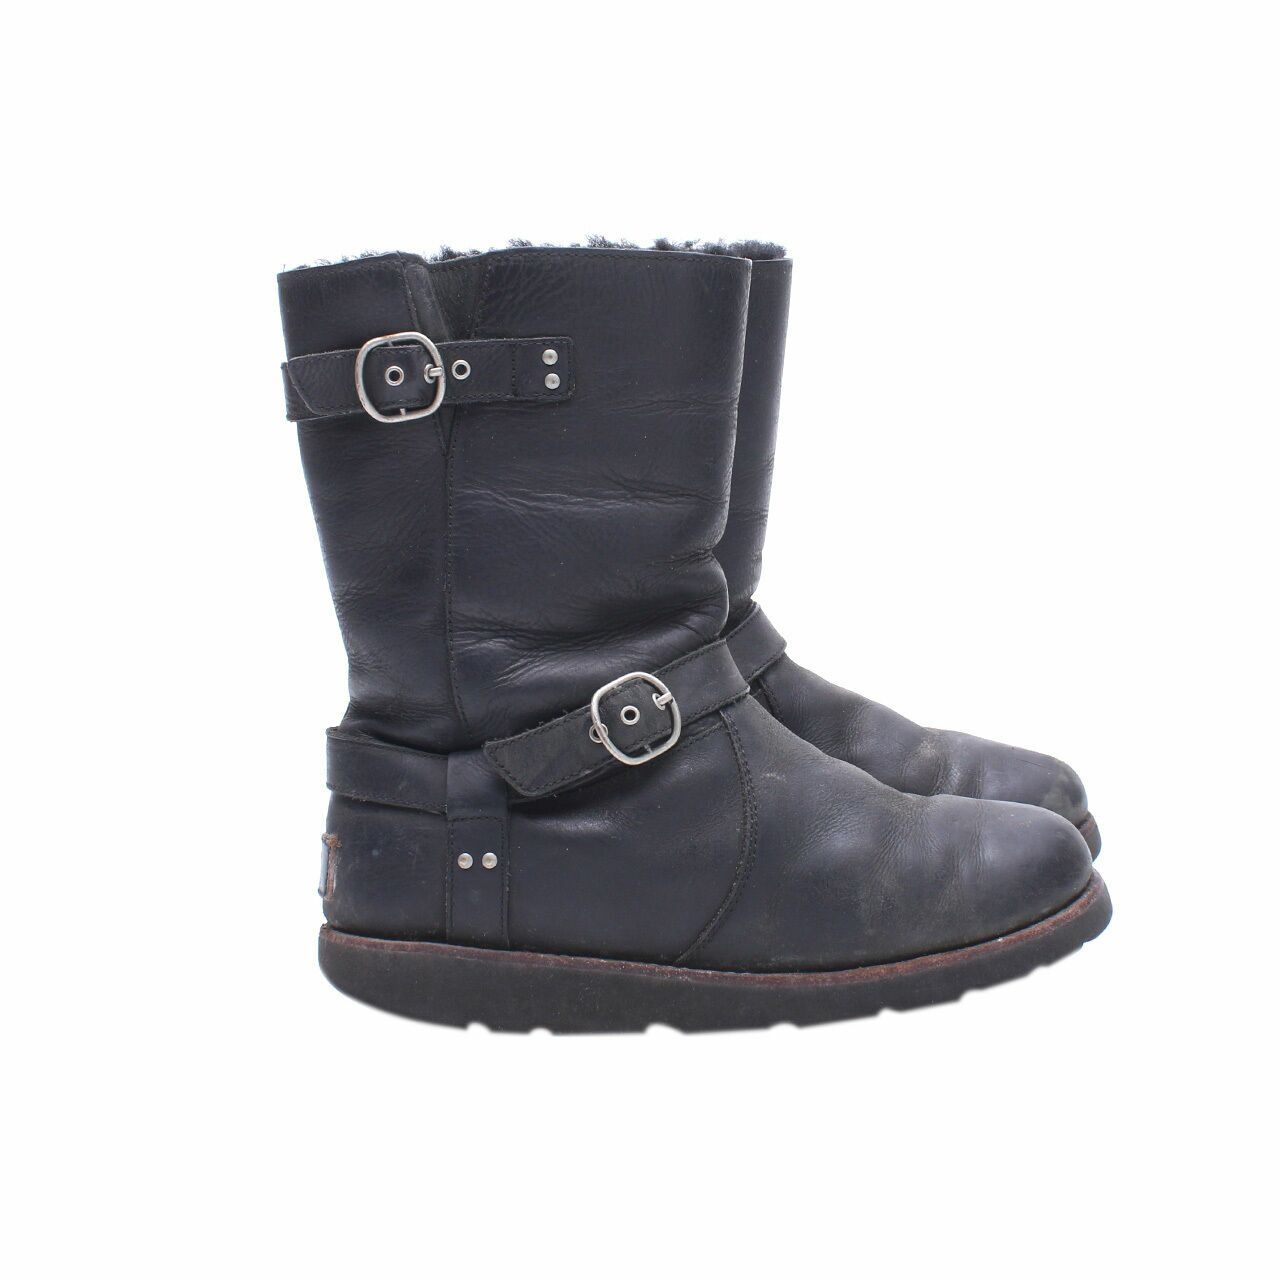 UGG Black Leather Fur Boots